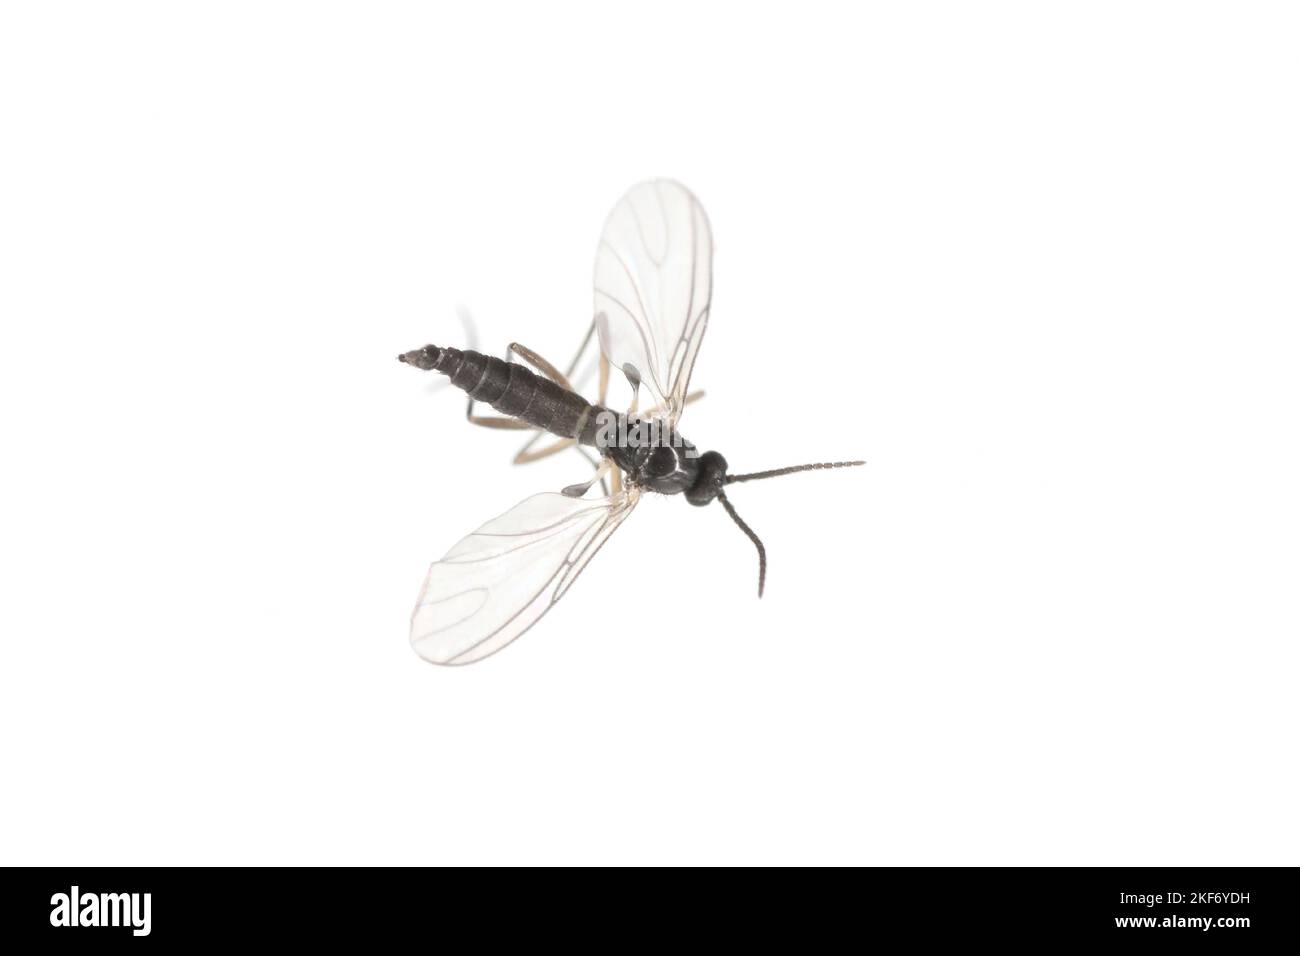 Gnat fungo dalle ali scure, Sciaridae isolati su sfondo bianco, questi insetti si trovano spesso all'interno delle case. Foto Stock